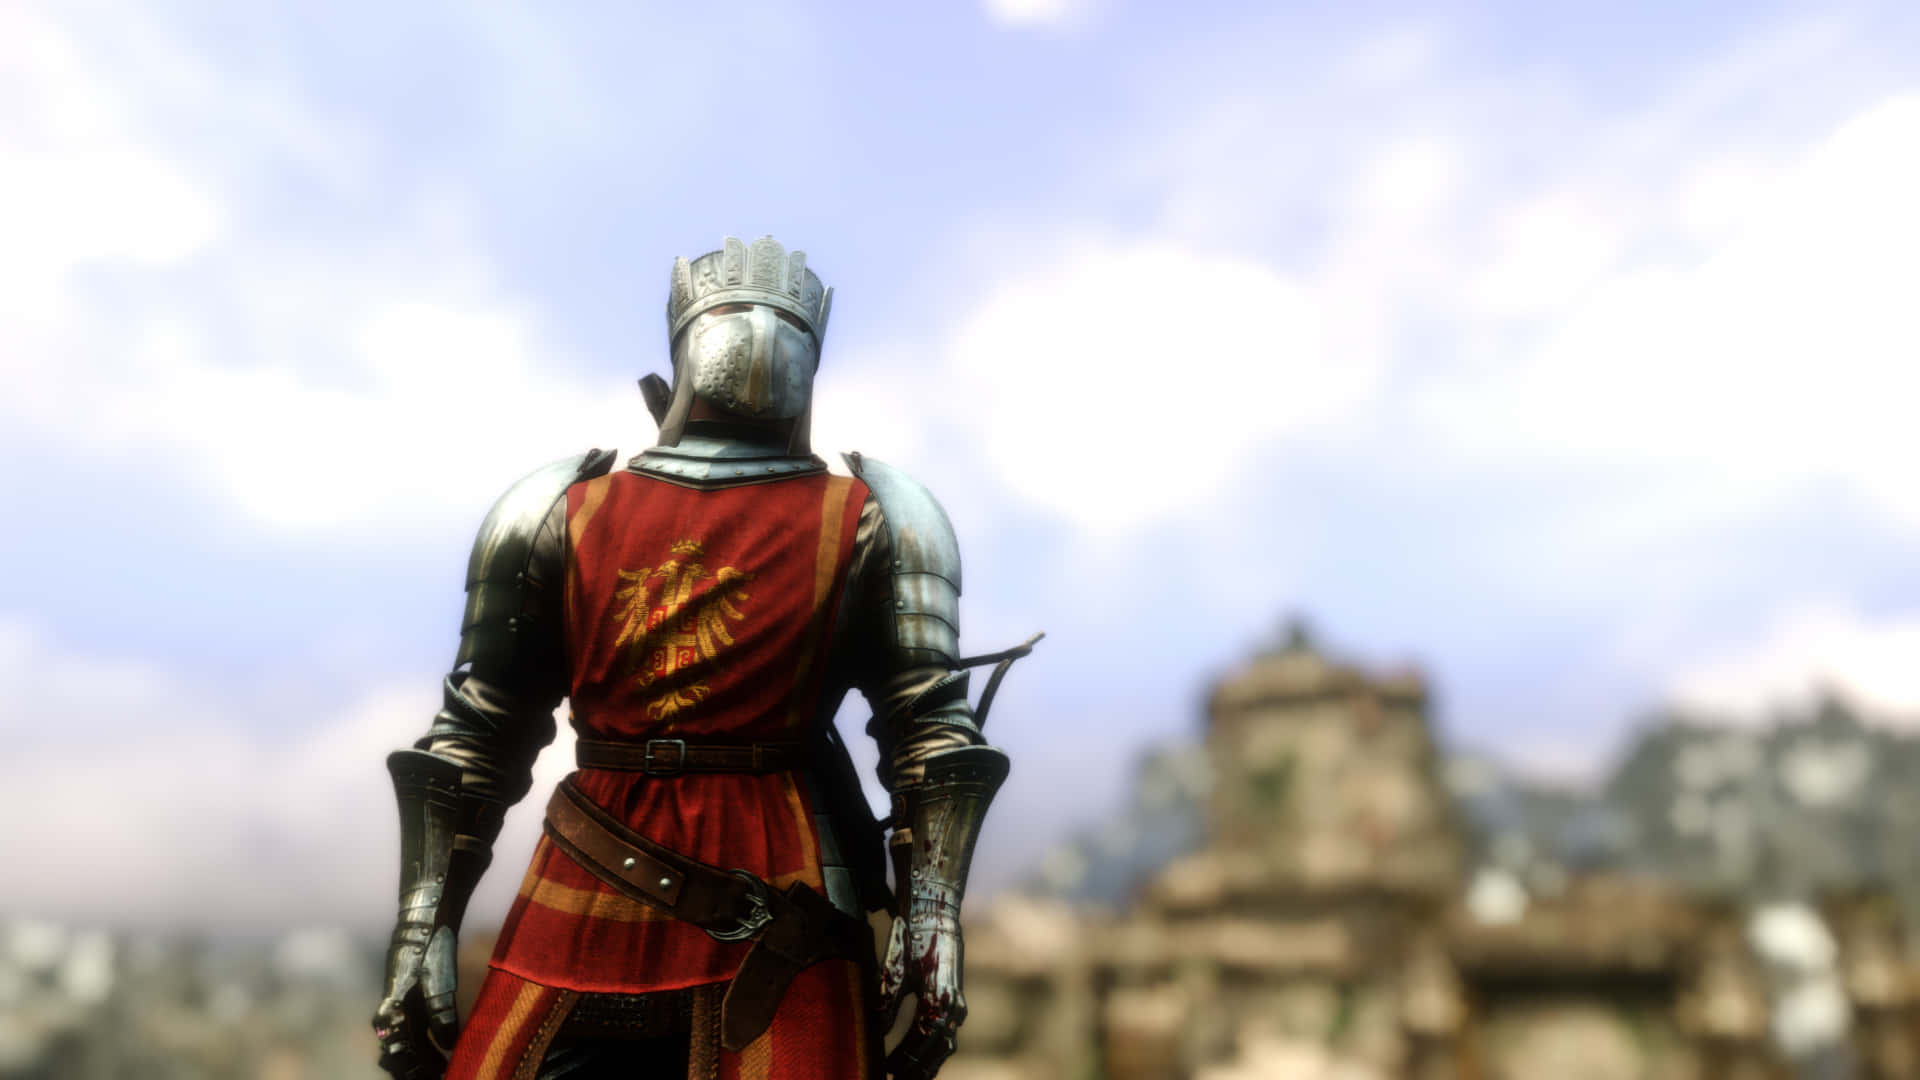 Best Mordhau Background Red Knight Warrior 1920 x 1080 Background